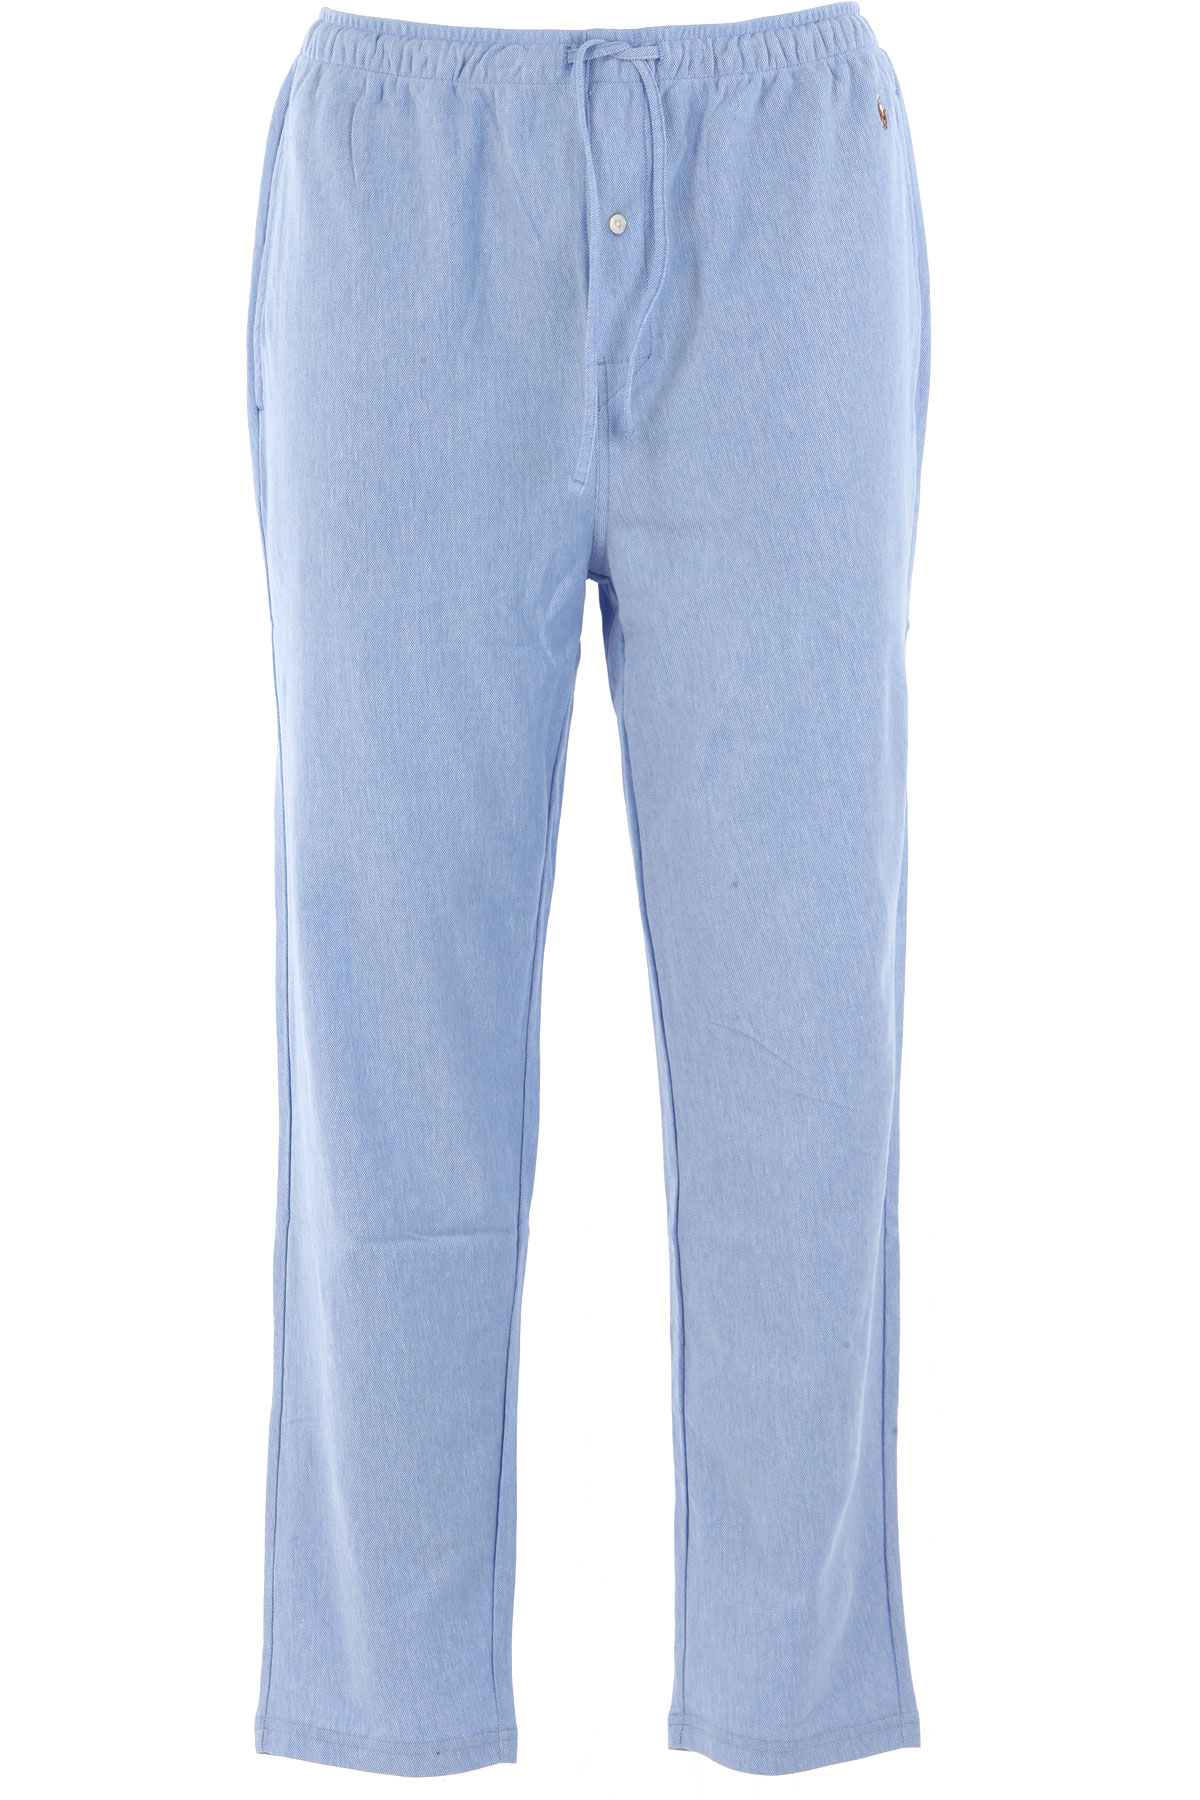 Ralph Lauren Pyjama Homme , Bleu clair, Coton, 2017, L S XL